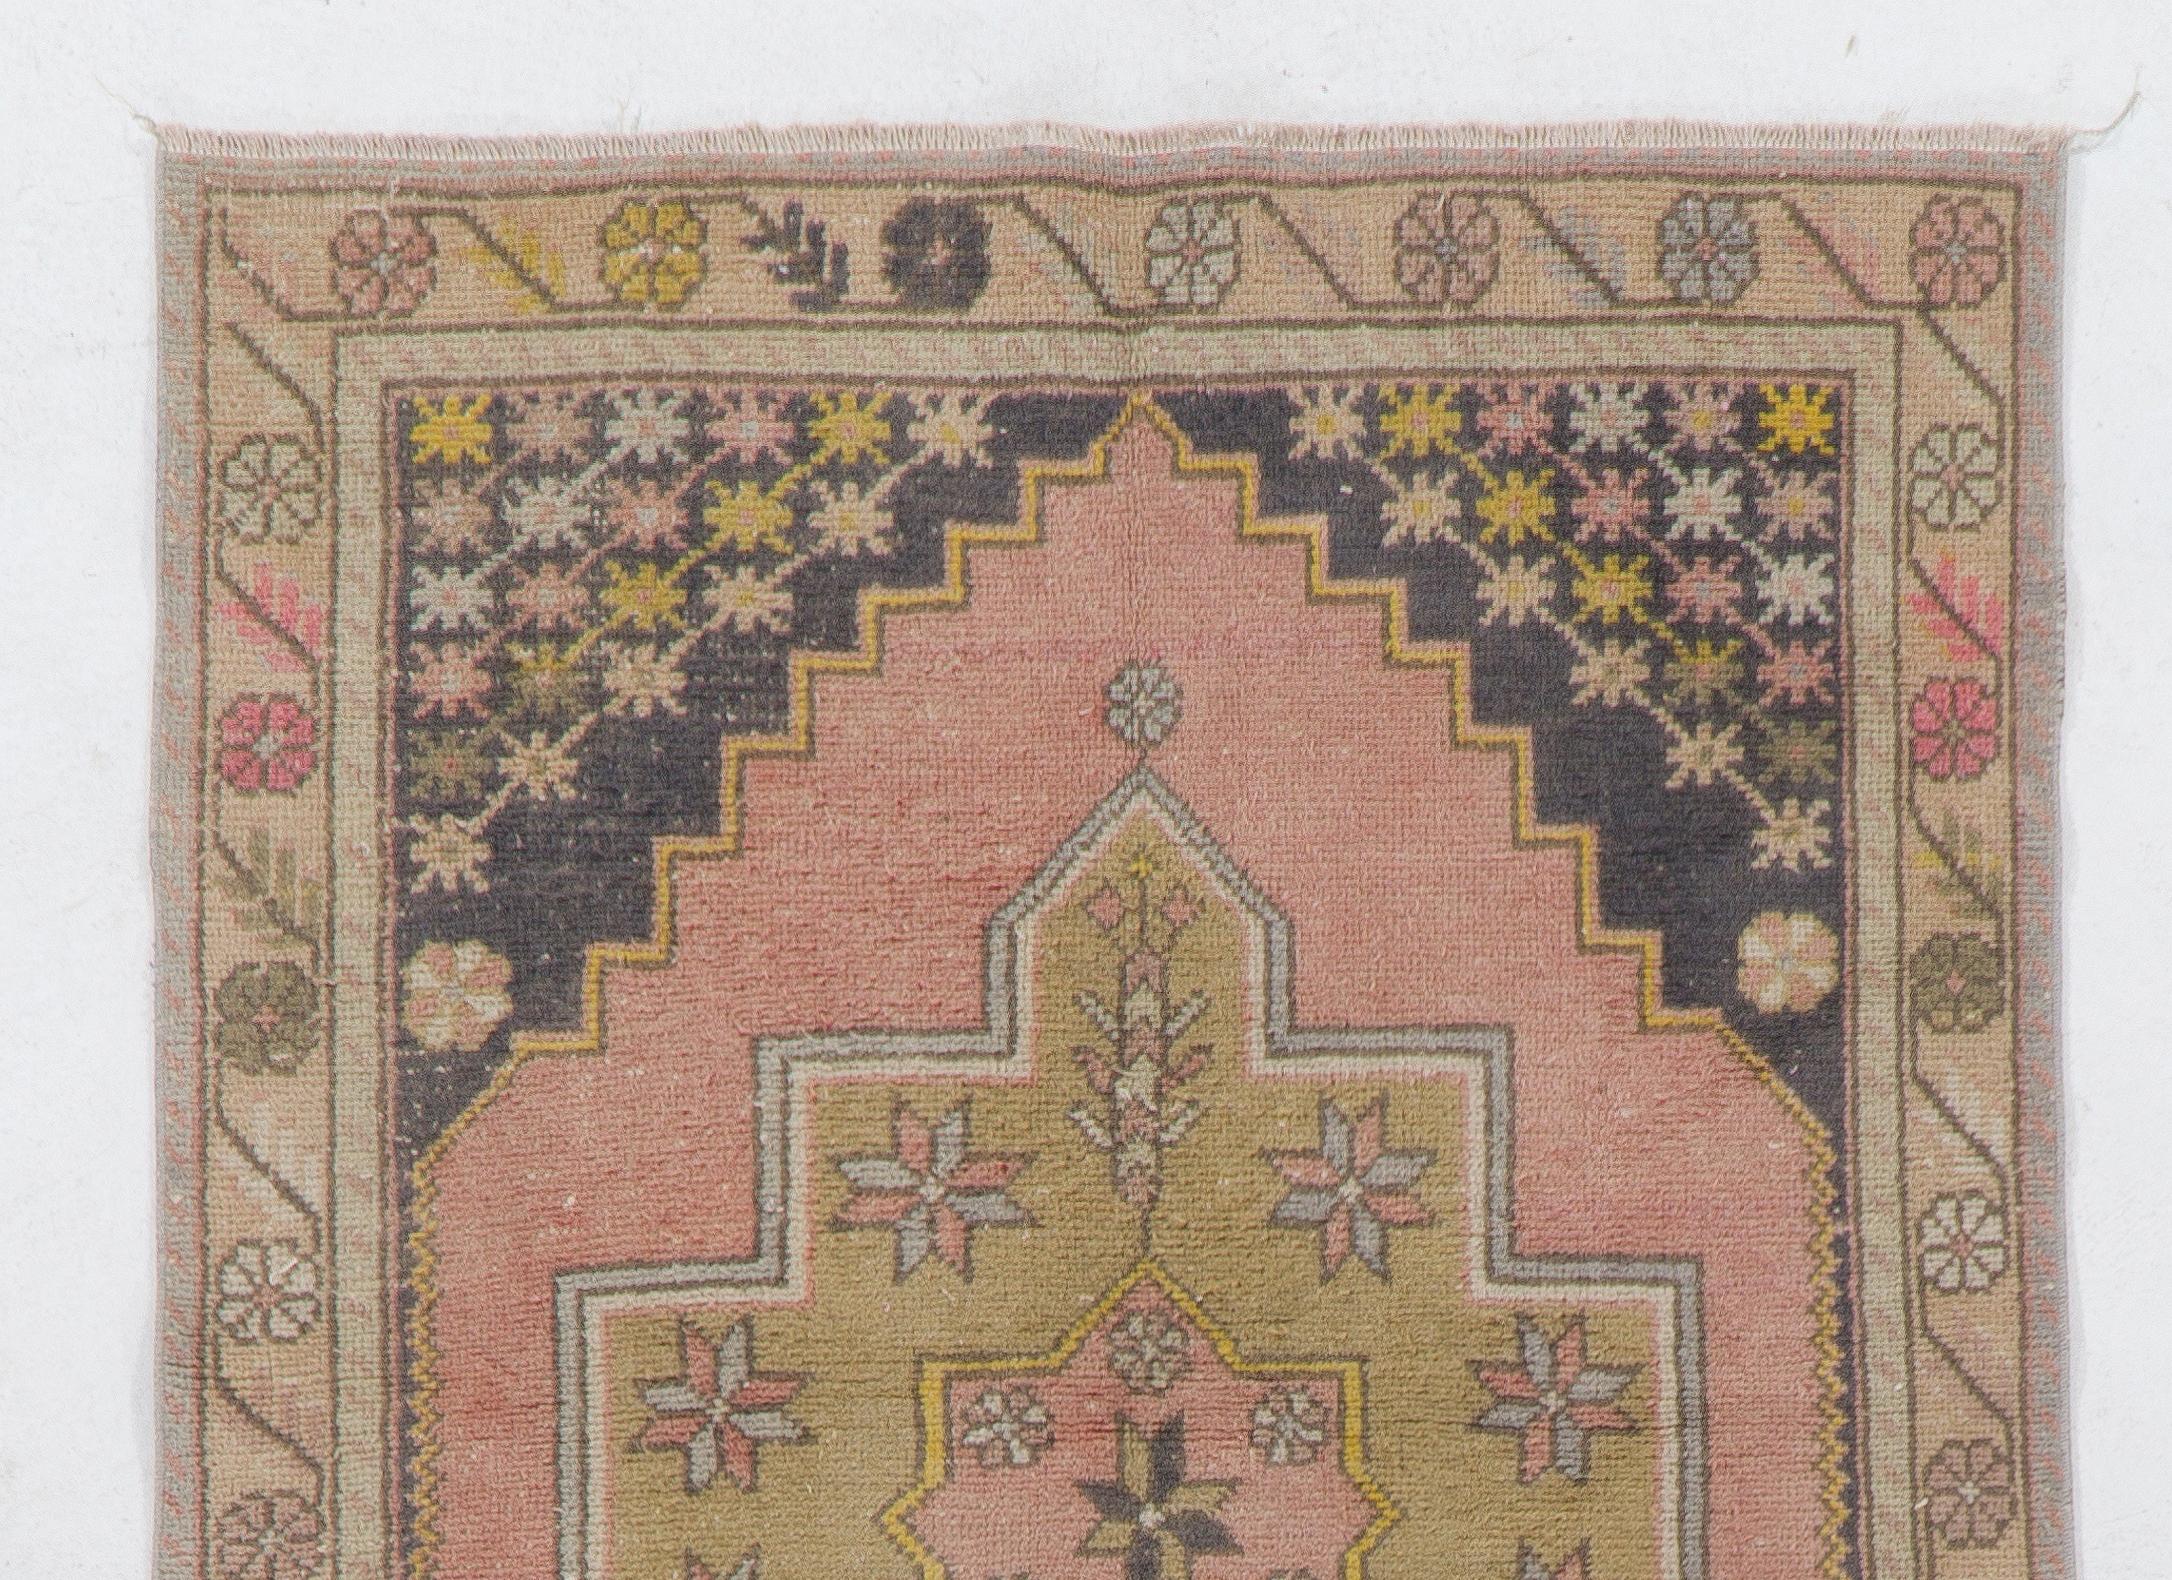 Ce tapis vintage a été noué à la main en Turquie dans les années 1950. Il présente un médaillon géométrique au centre de deux zones imbriquées en forme de losange dans un champ aux couleurs rouge et noir délavées, dont les bordures sont ornées de